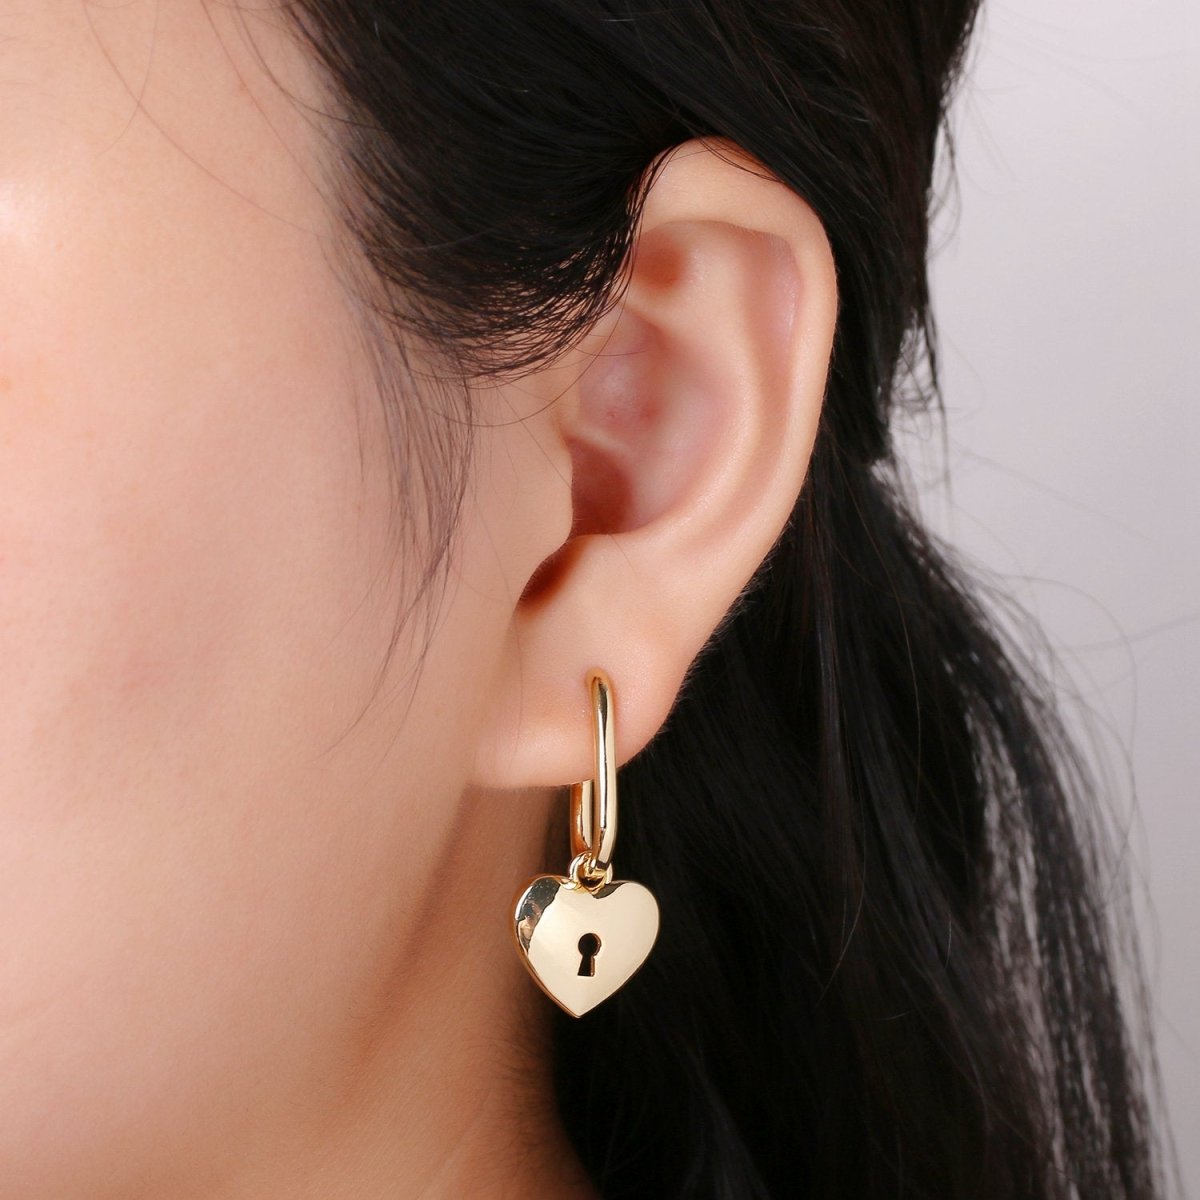 Lock gold earrings - Padlock hoop earrings - Huggie earrings - Padlock huggie hoops - Gold key hoops - key earrings Q-184 Q-185 - DLUXCA